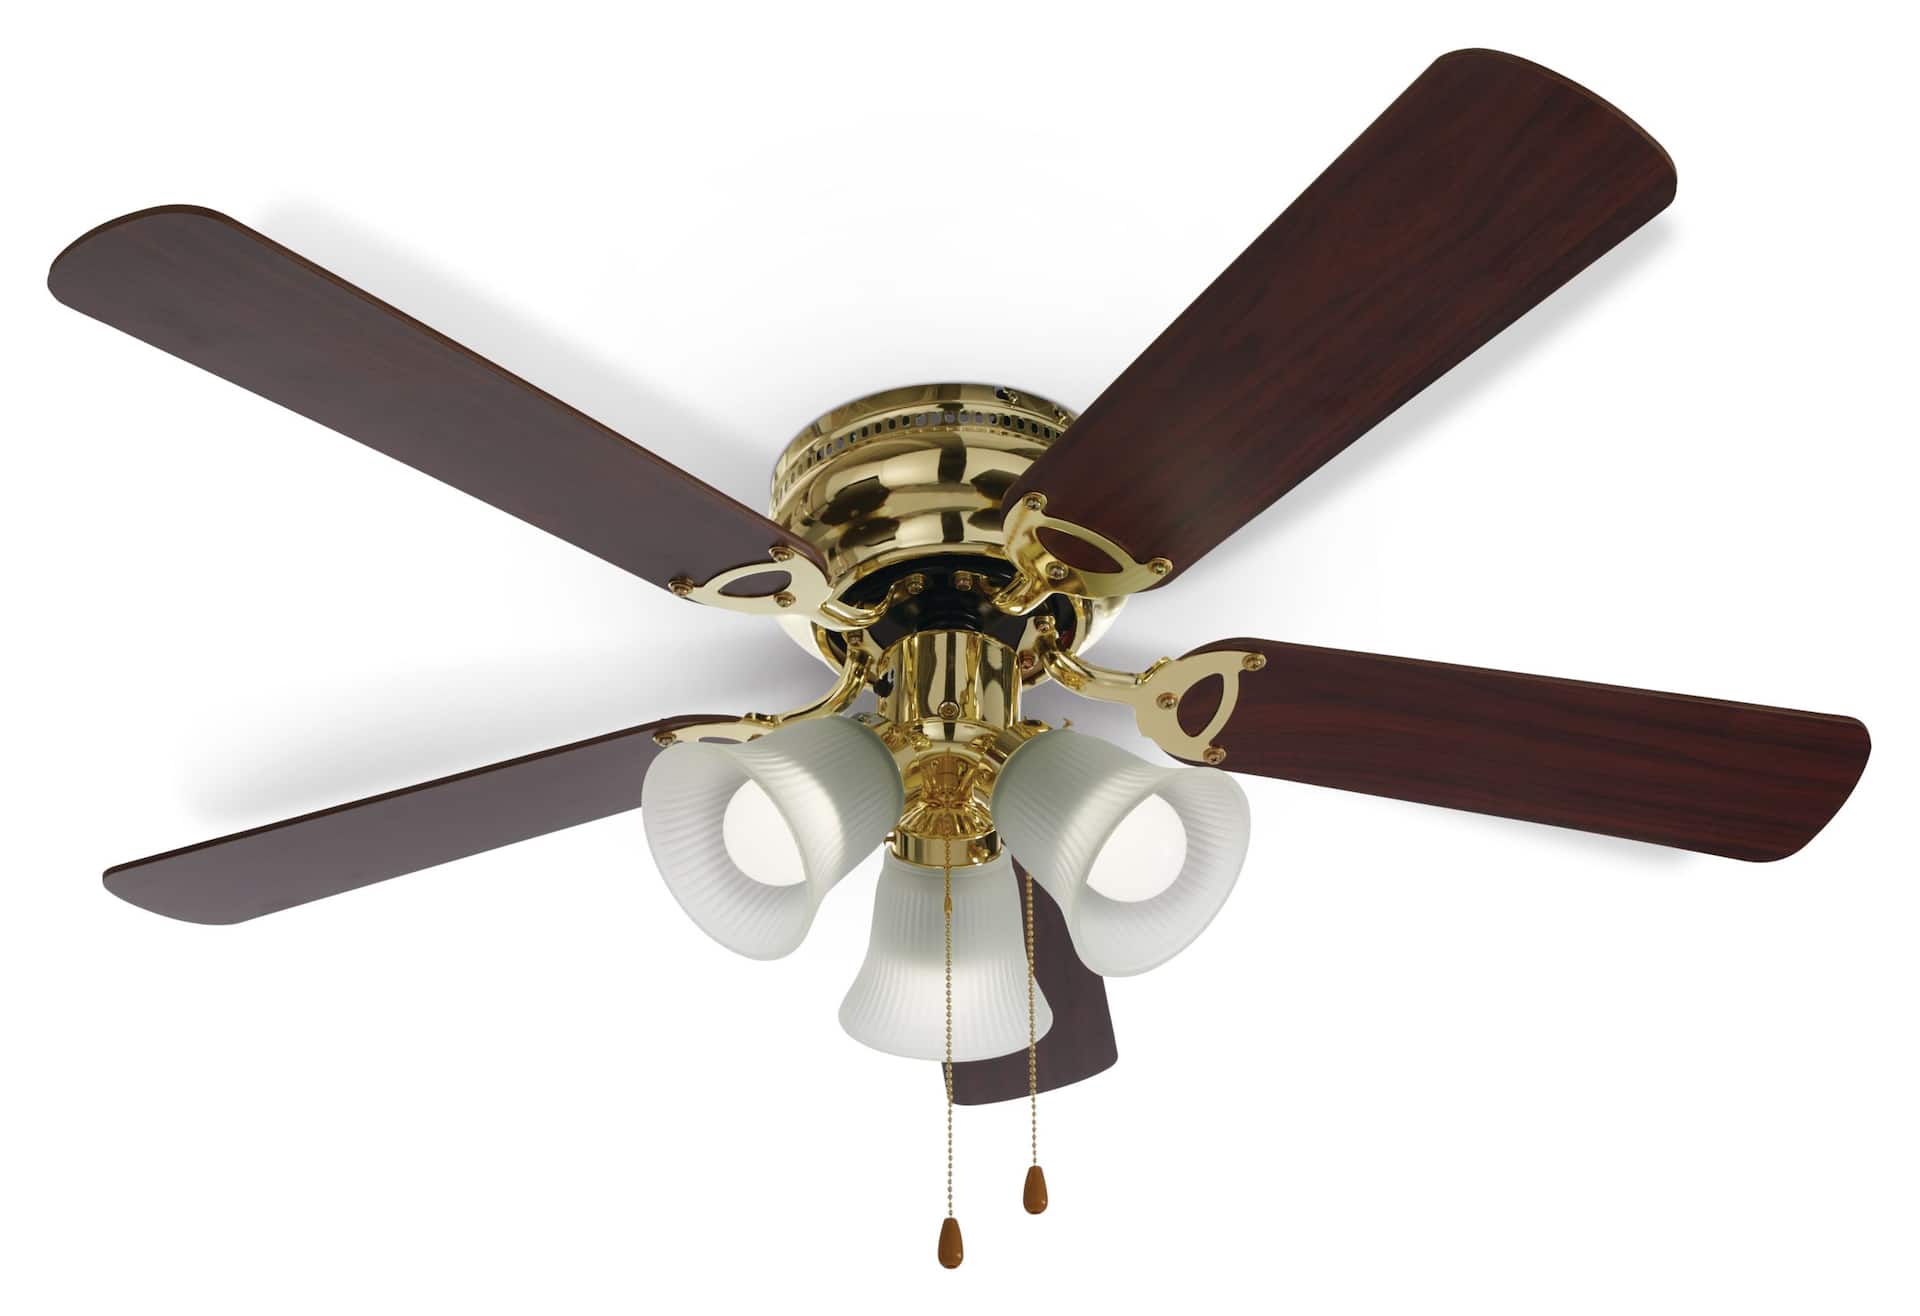 For Living Reversible 5-Blade 3-Speed Ceiling Fan with Lighting, 42-in,  Oak/Walnut